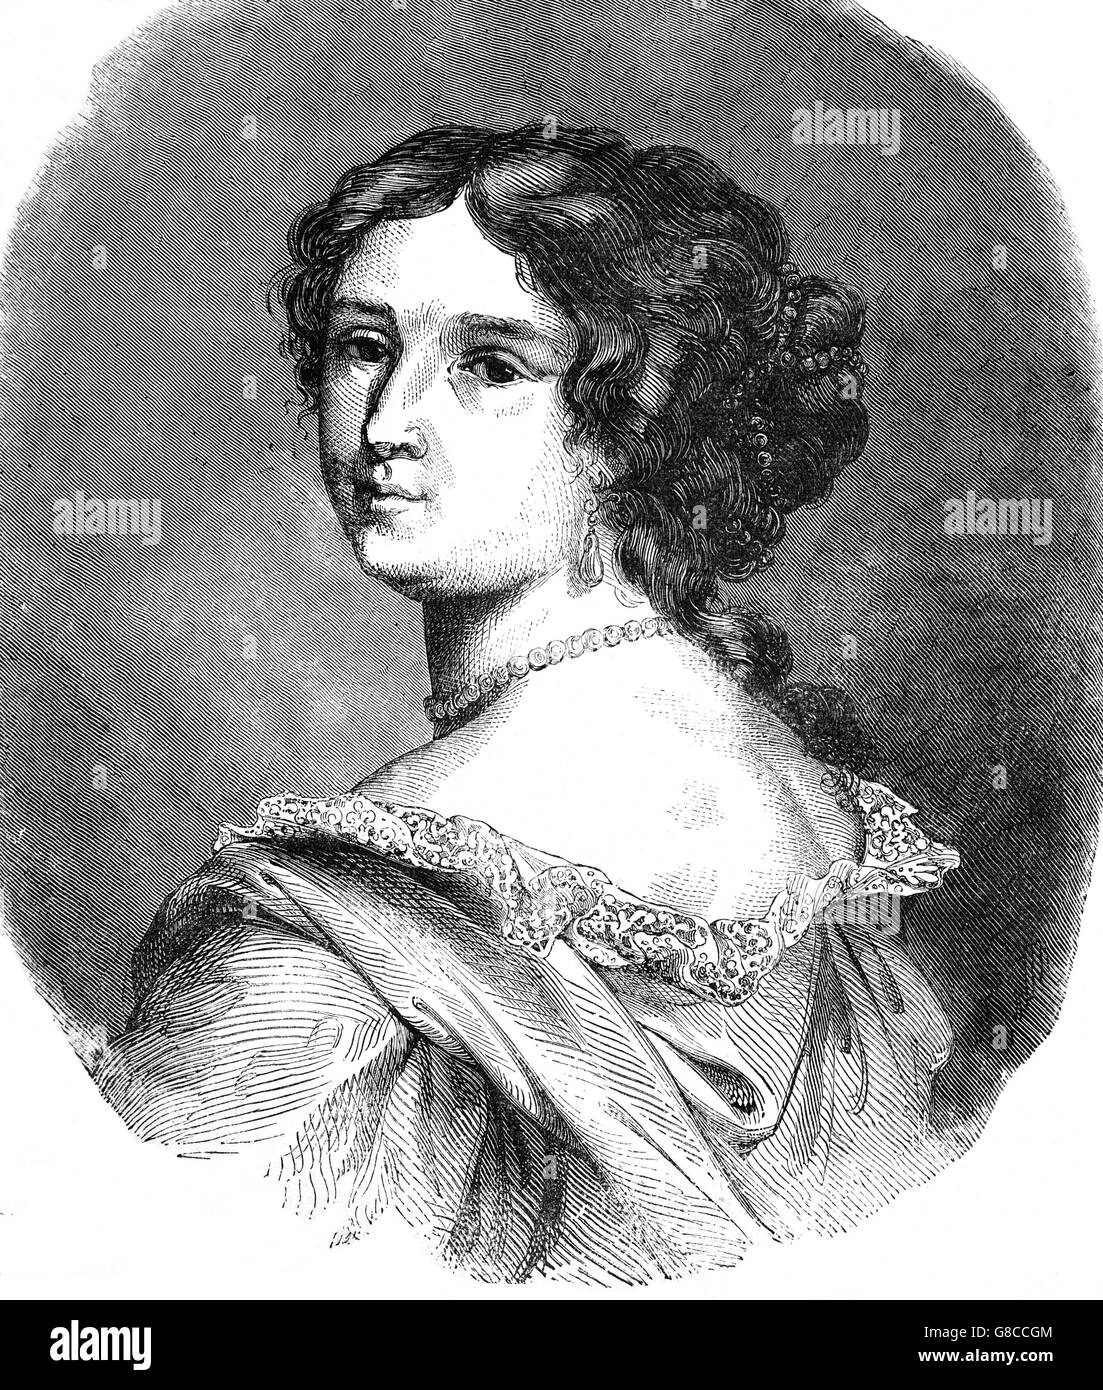 Françoise d'Aubigné, Marquise de Maintenon war die zweite Frau von König Louis XIV von Frankreich und bekannt als Madame de Maintenon. Heirat mit dem König wurde nie offiziell angekündigt oder zugelassen, obwohl sie bei Hofe sehr einflussreich war. Stockfoto